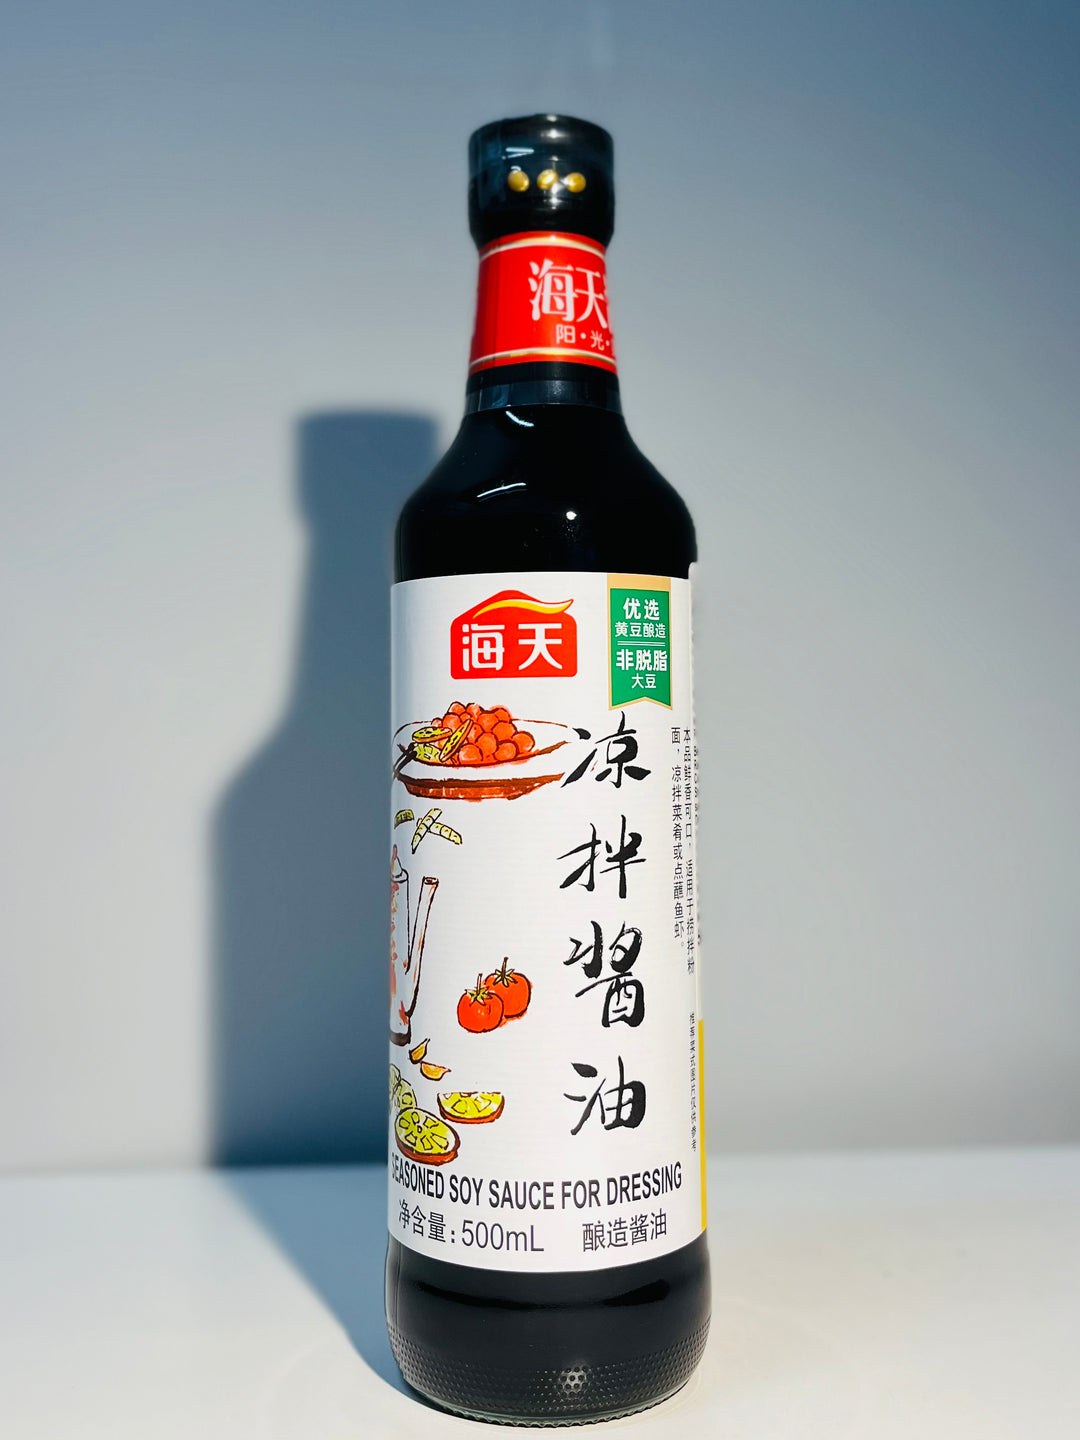 海天凉拌酱油500ml HaDay Seasoned soy sauce for dressing